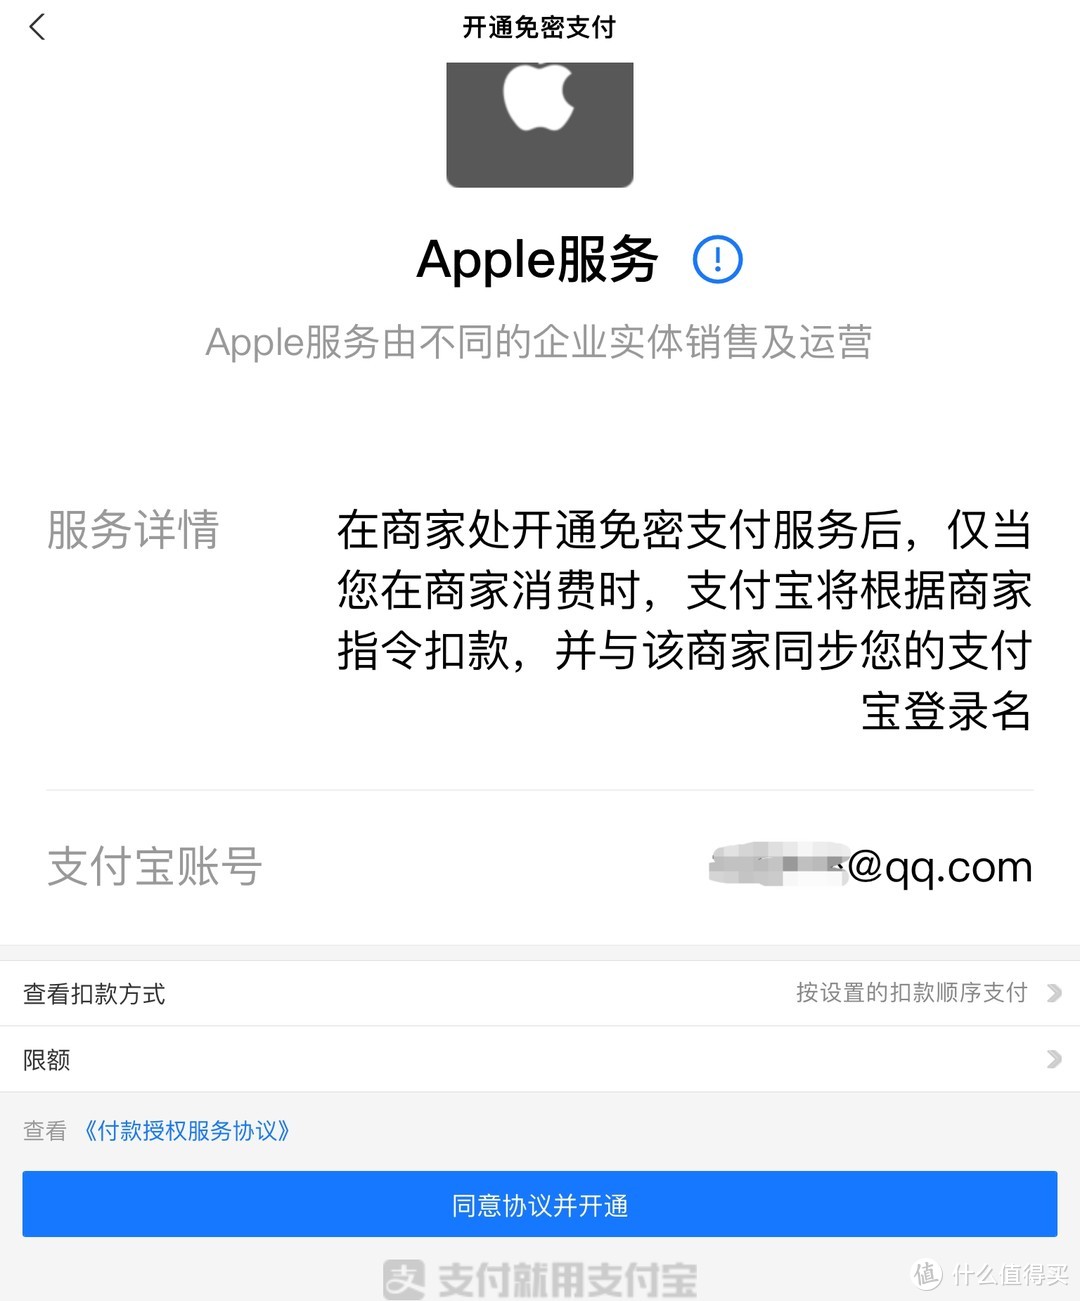 苹果用户快来领红包了，可以直接无损充进apple ID的那种。